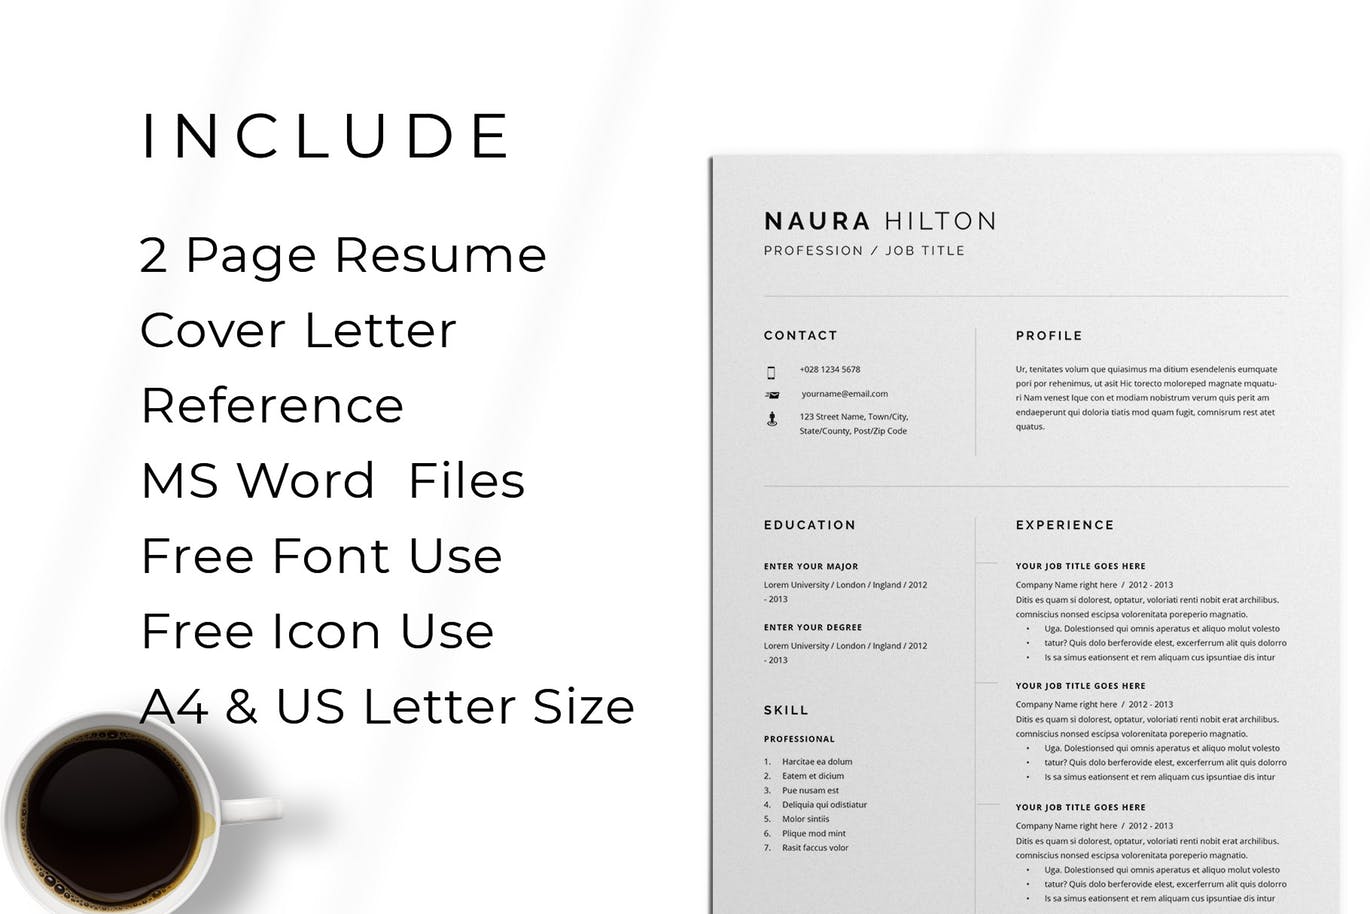 极简设计风格求职简历&推荐信设计模板 Resume + Cover Letter插图(4)